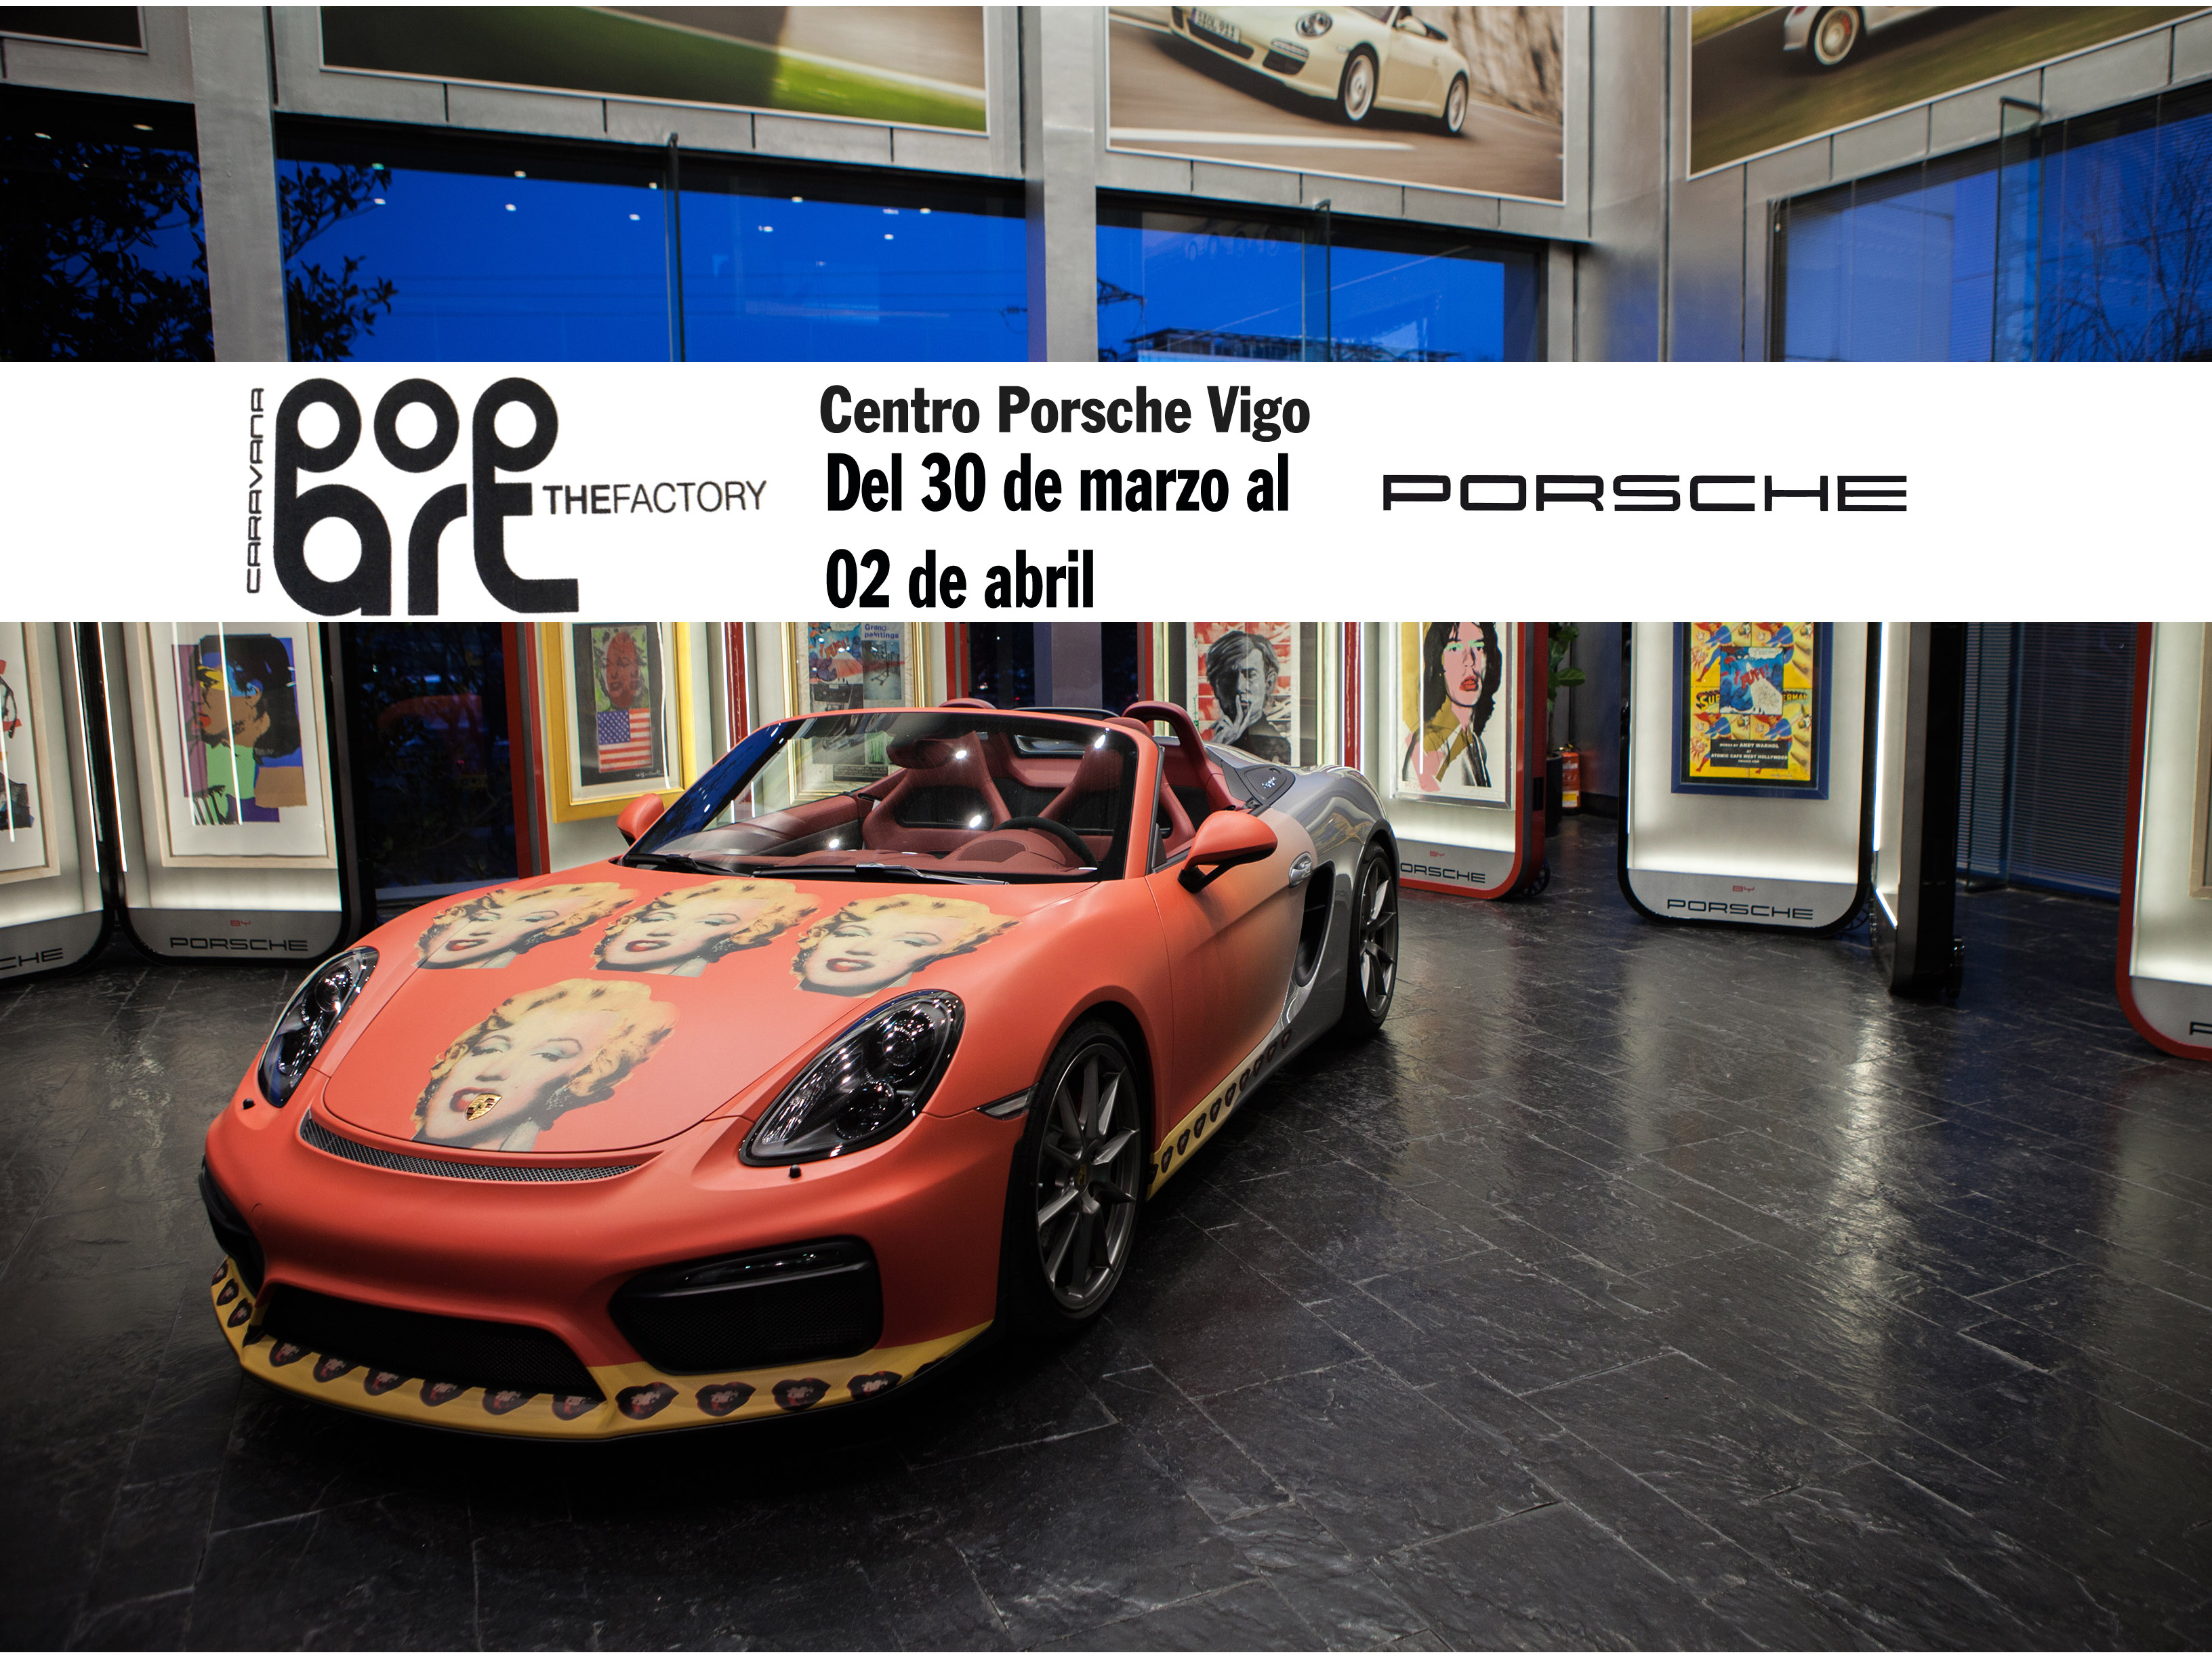 Obras originales Warhol en Porsche Vigo